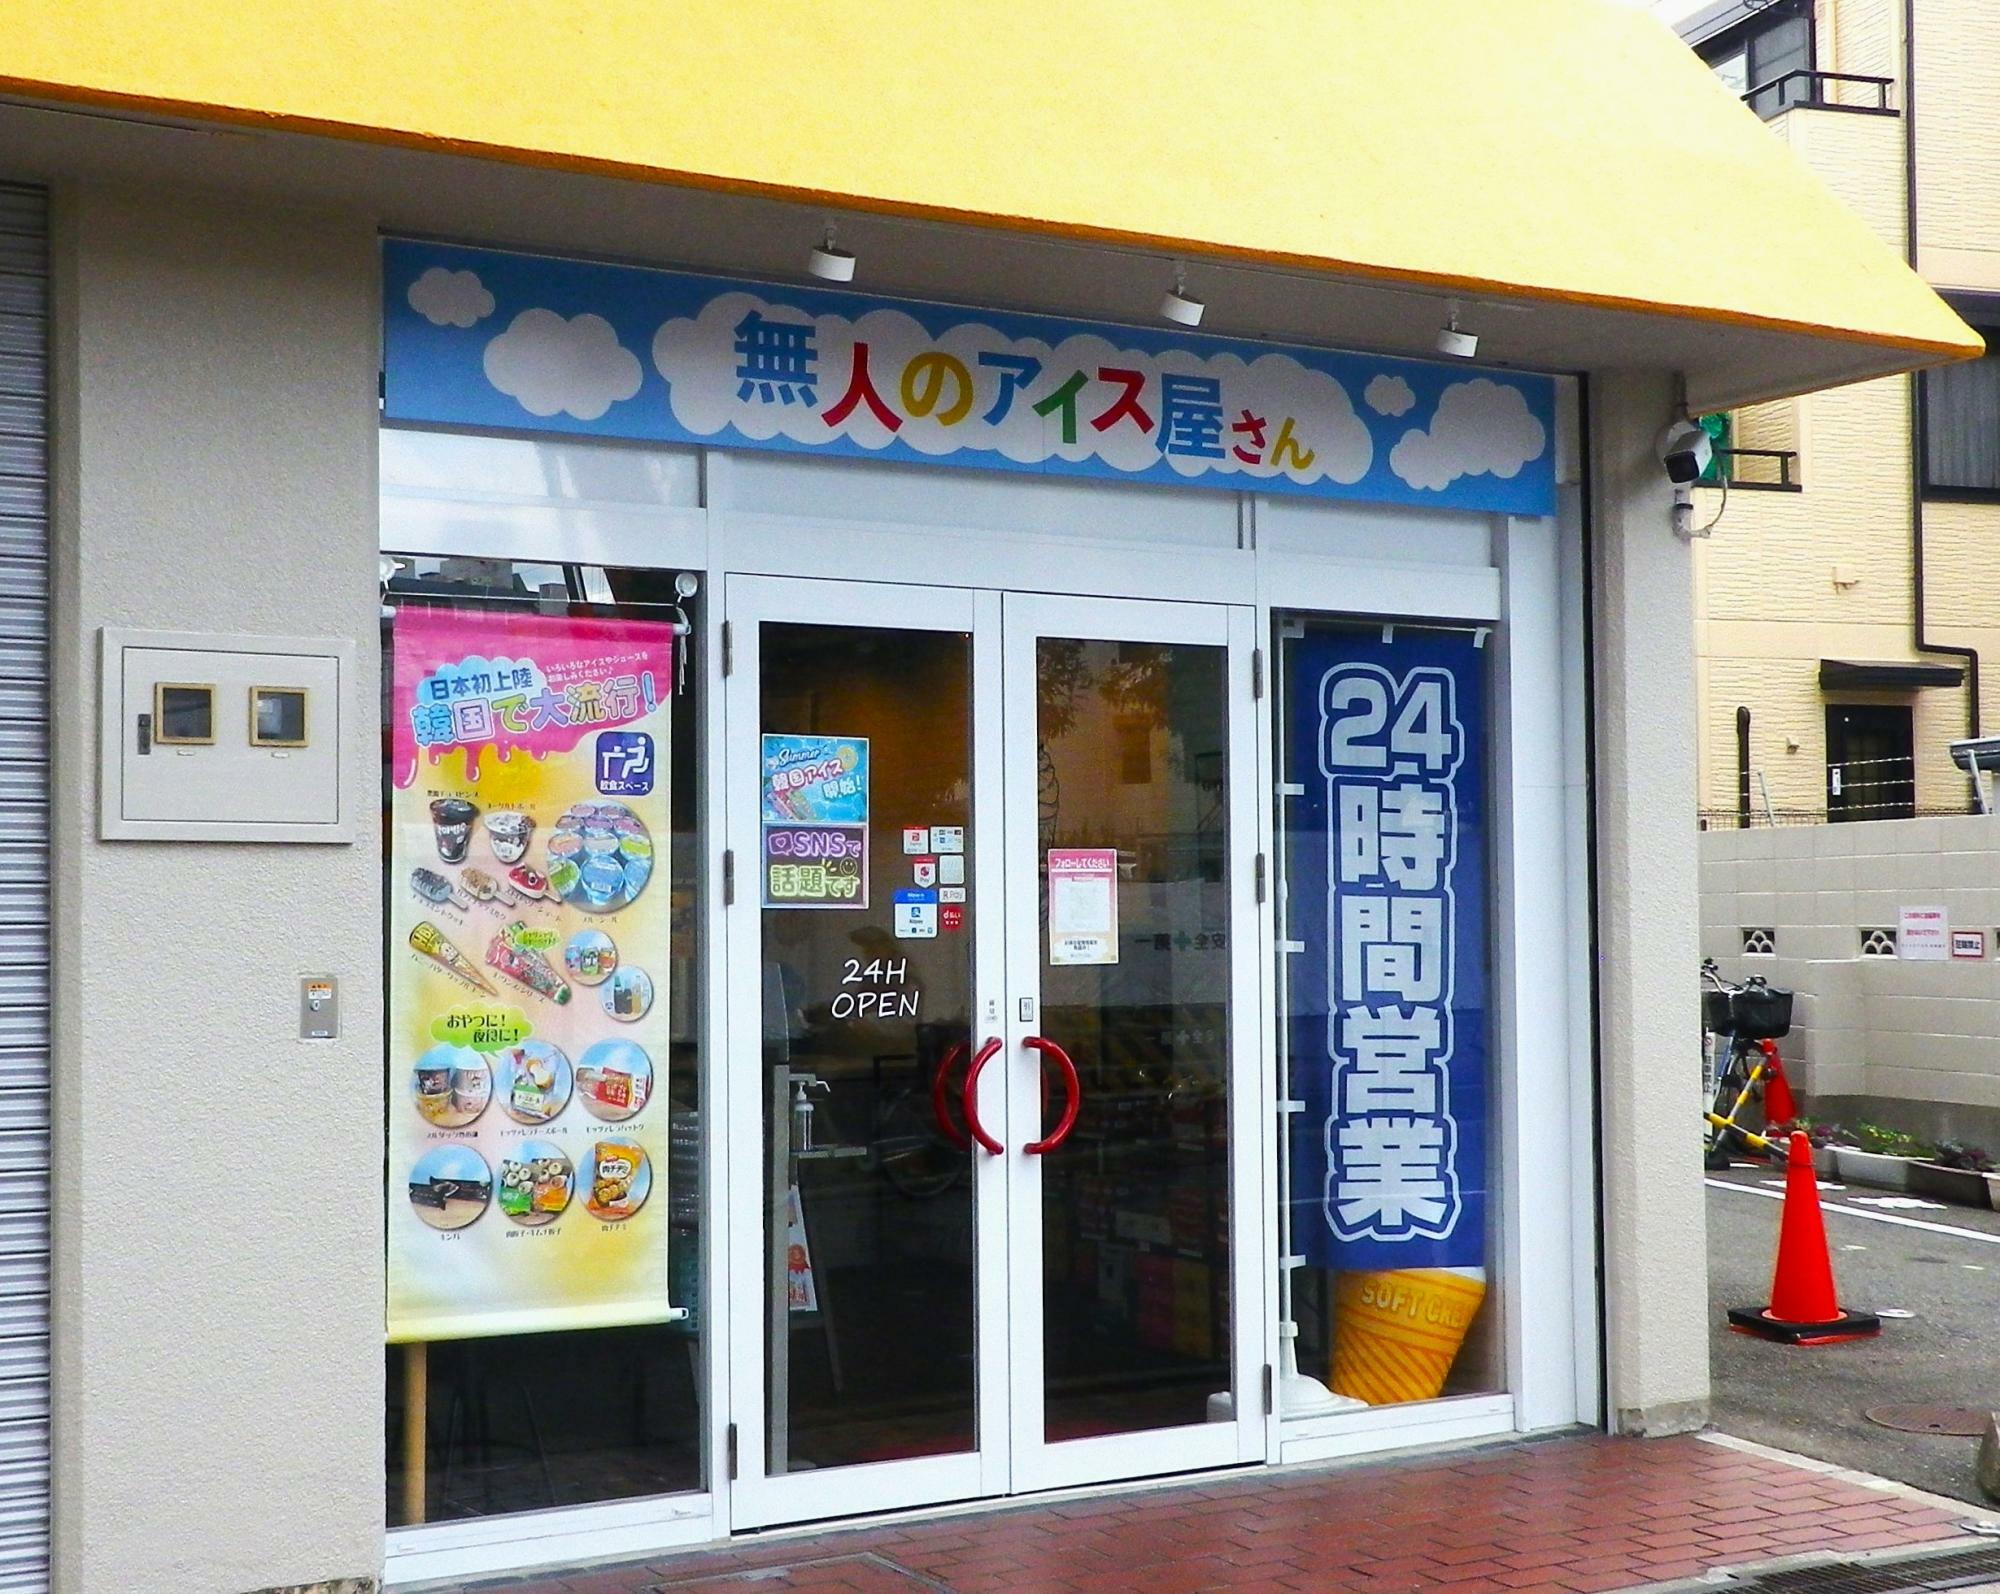 「無人のアイス屋さん」の近くには、大阪市立十三中学校。